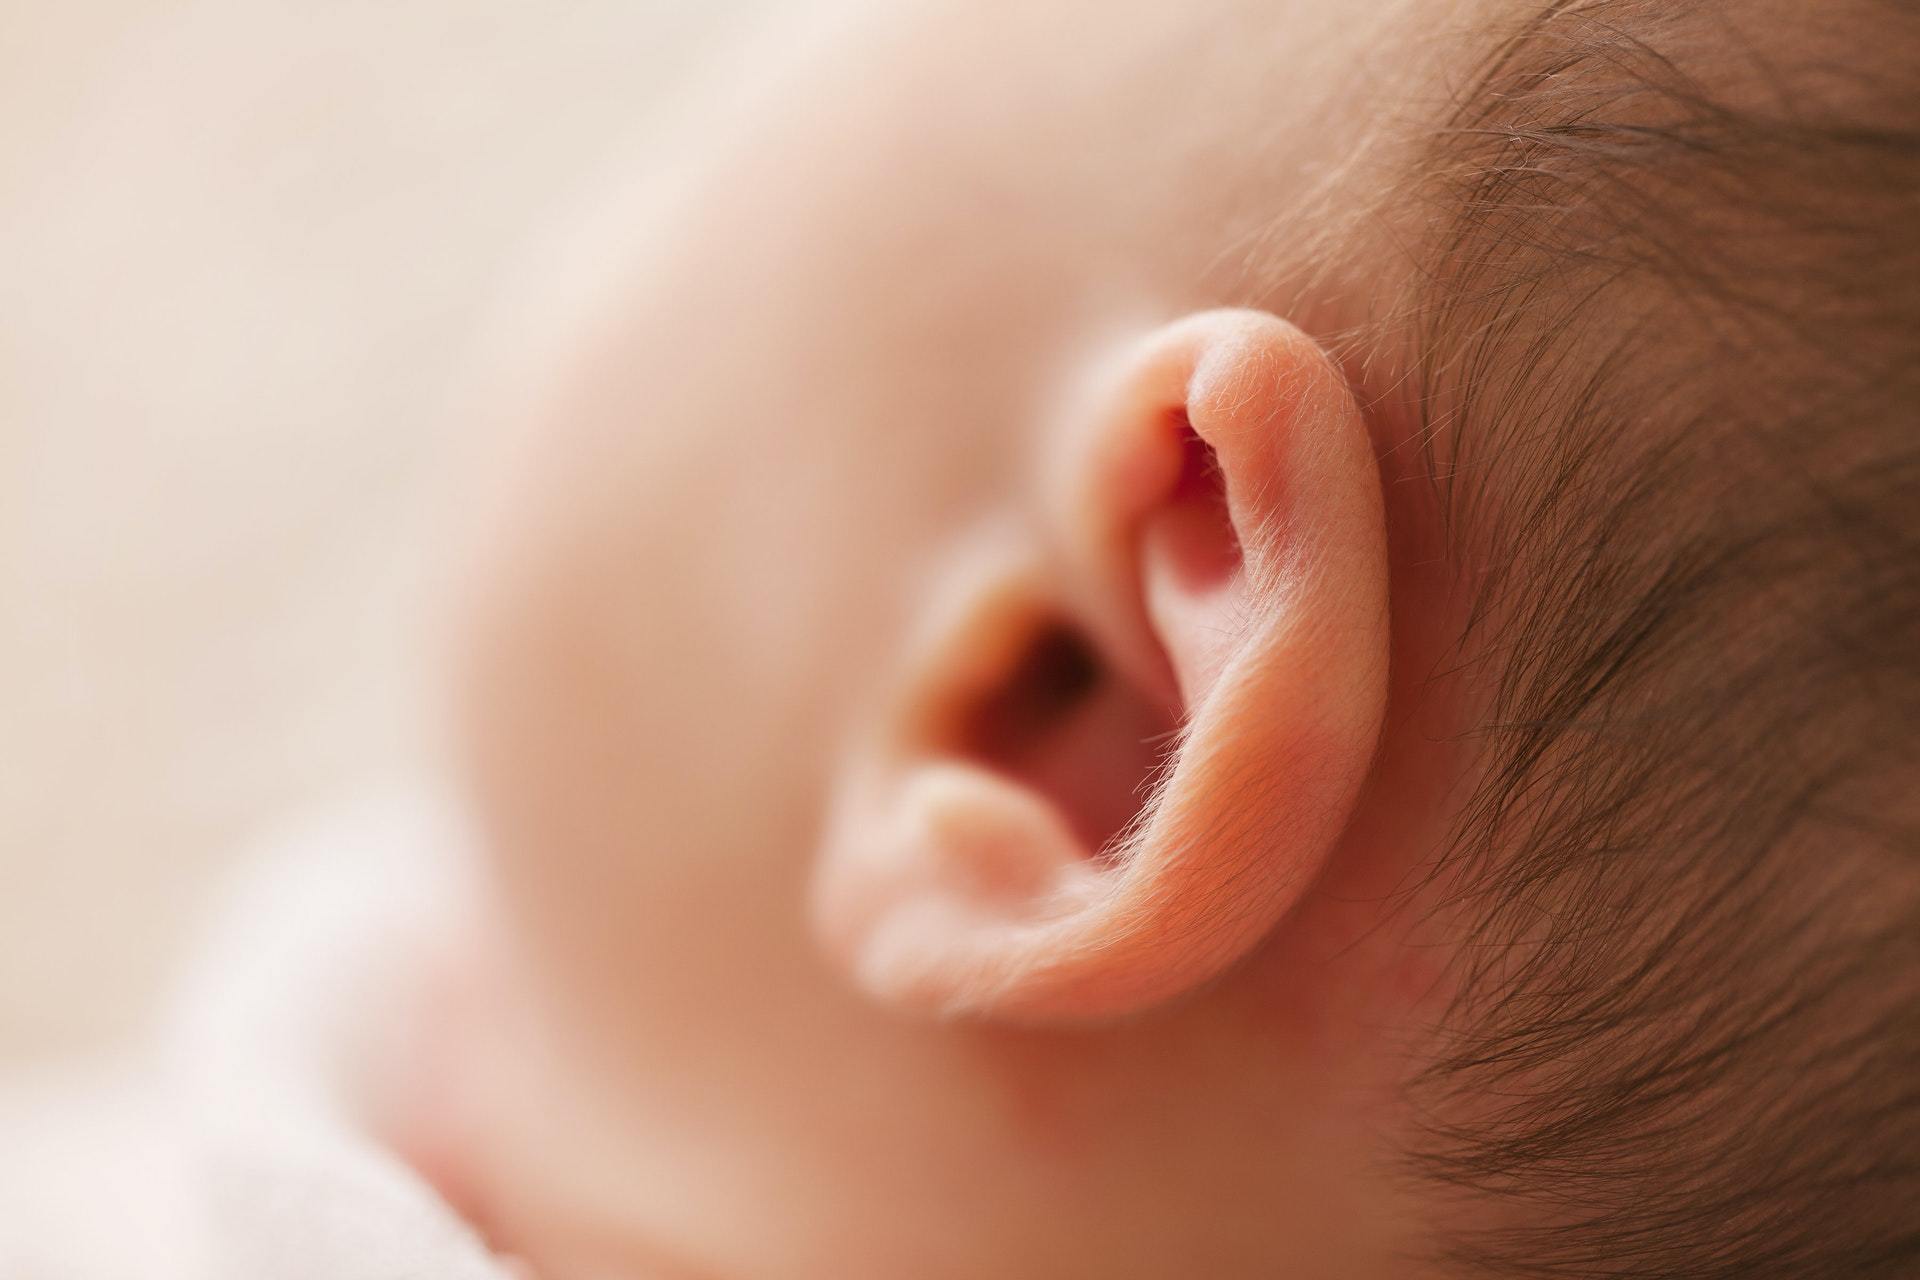 baby ear hearing loss in children